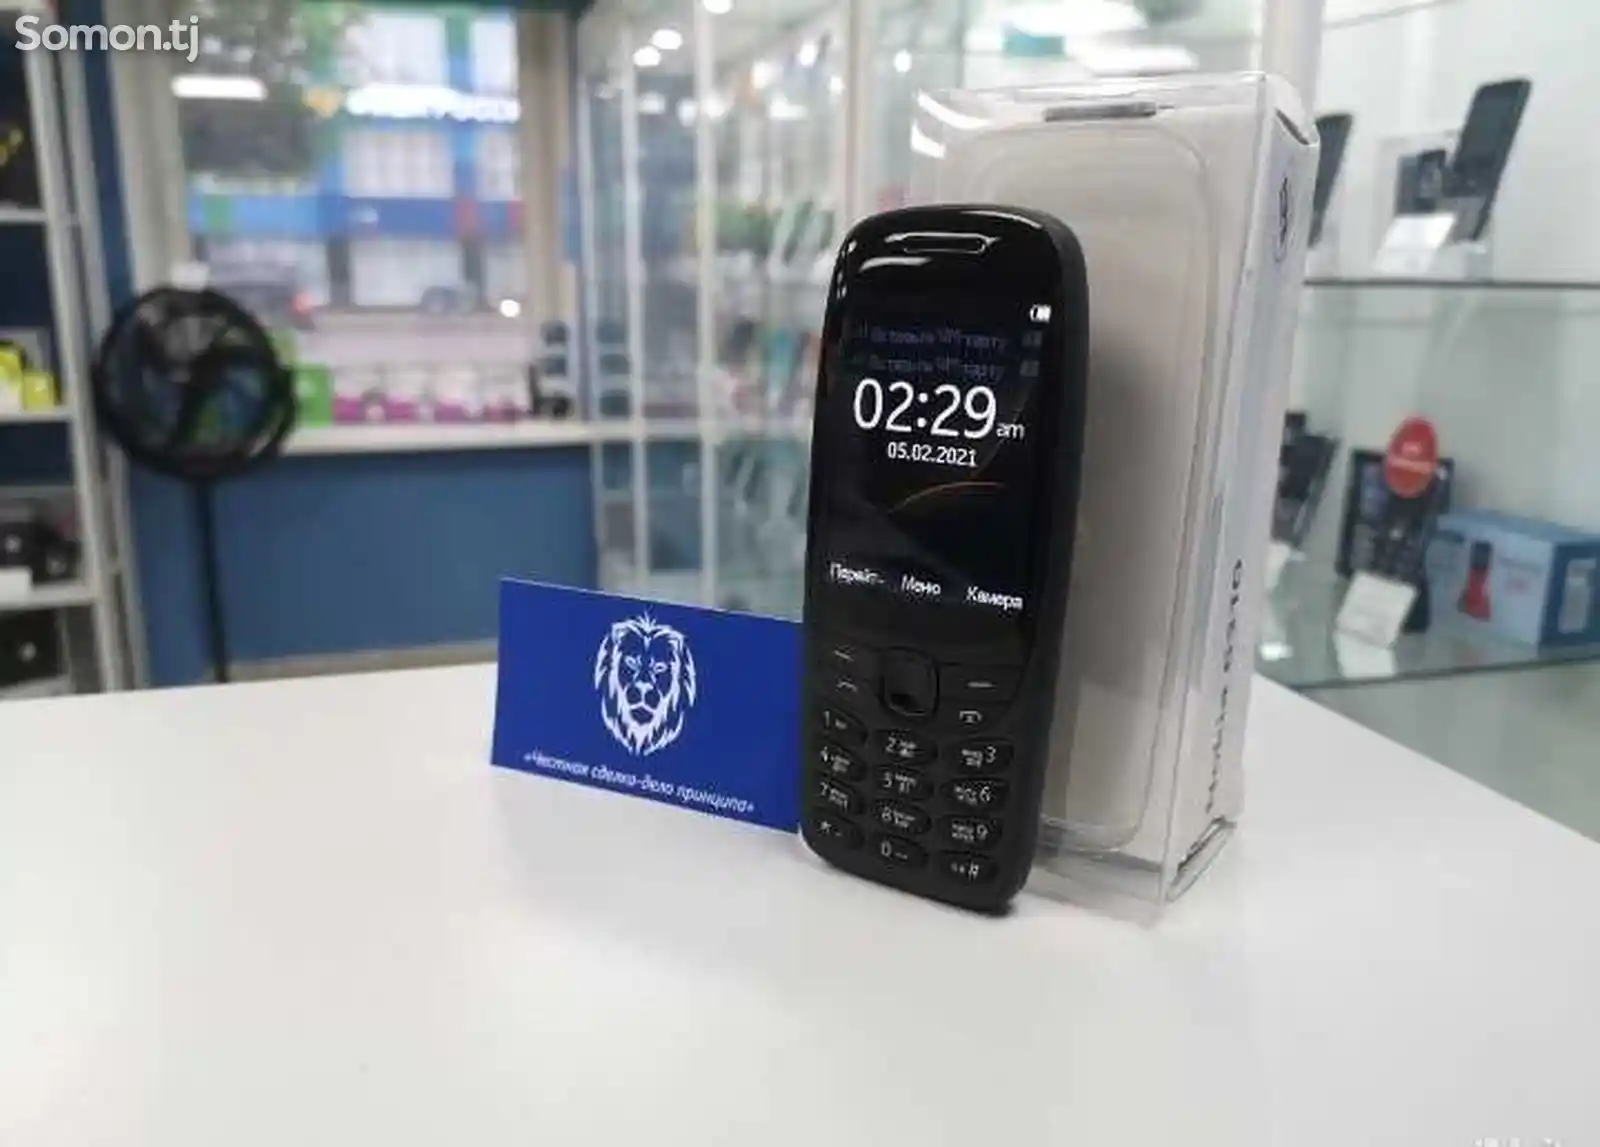 Nokia 6310-2